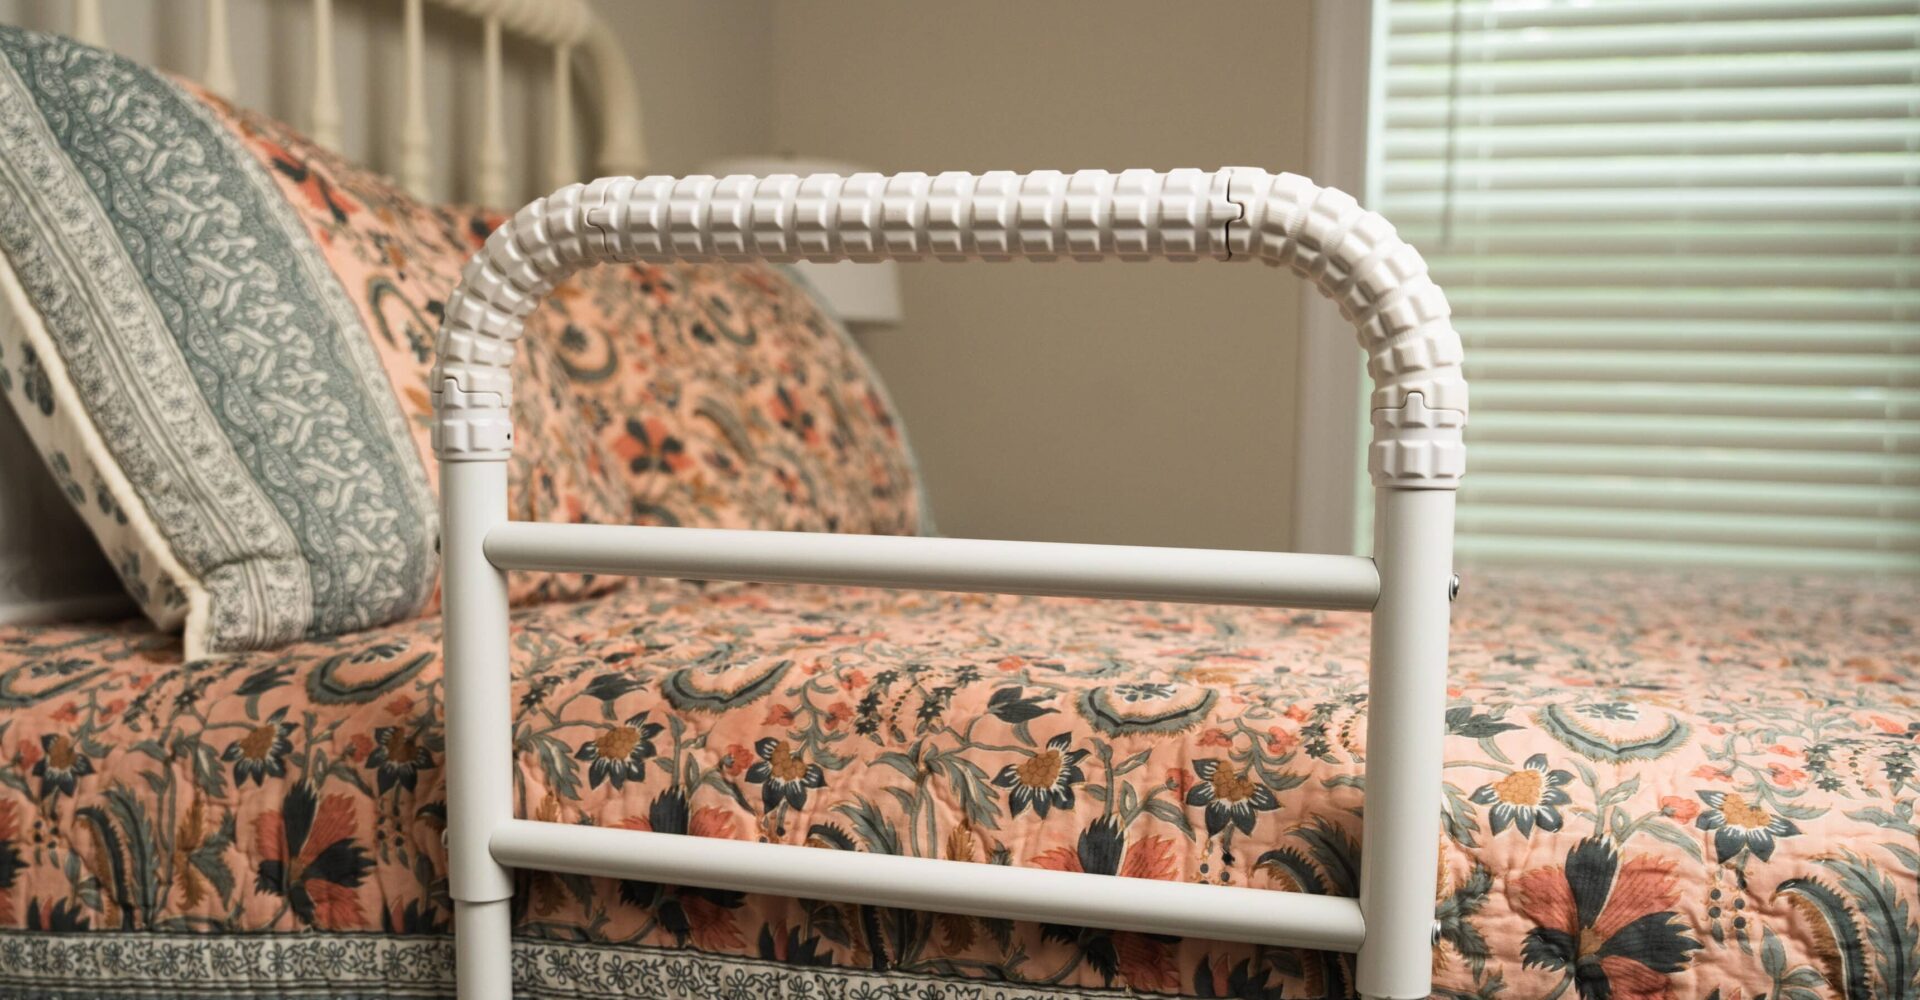 Bedrail For Seniors